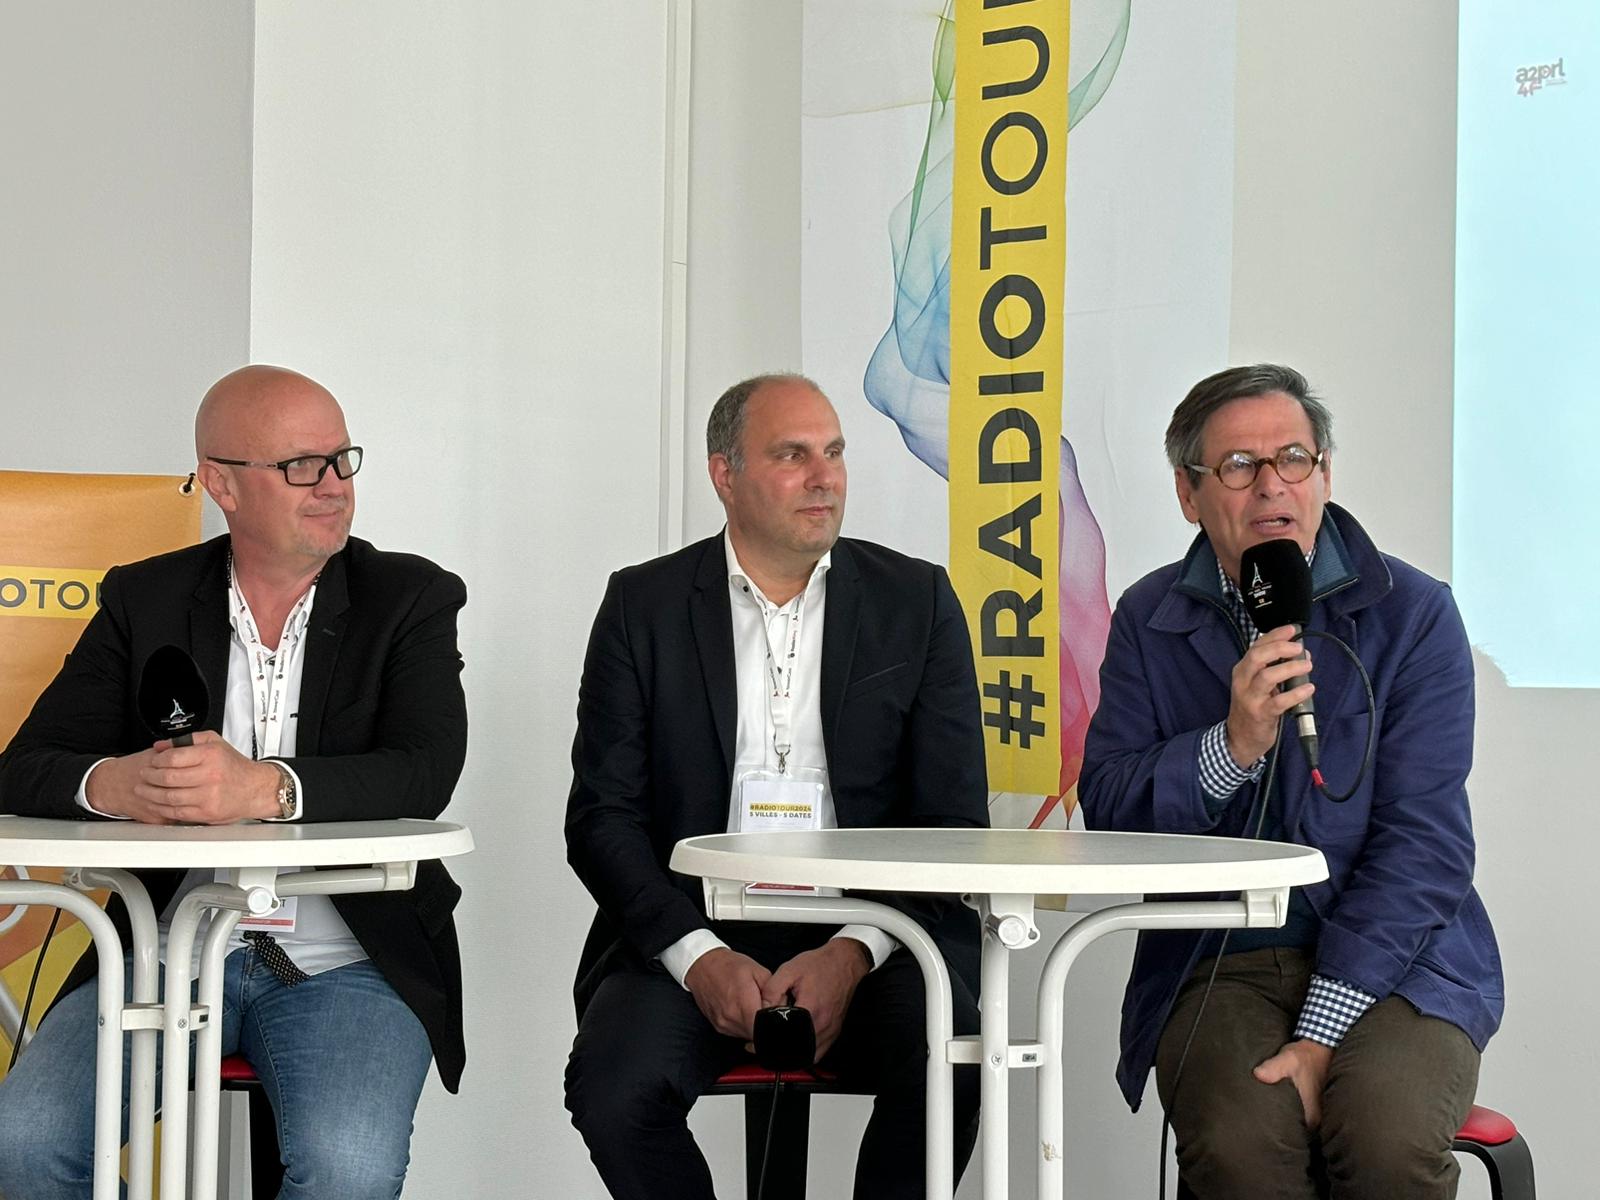 De gauche à droite : Franck Jehl (président de la Fédération associative des radios alsaciennes), Benoît Boulanger (directeur général de Magnum La Radio) et Daniel Crillon (directeur de France Bleu Alsace).